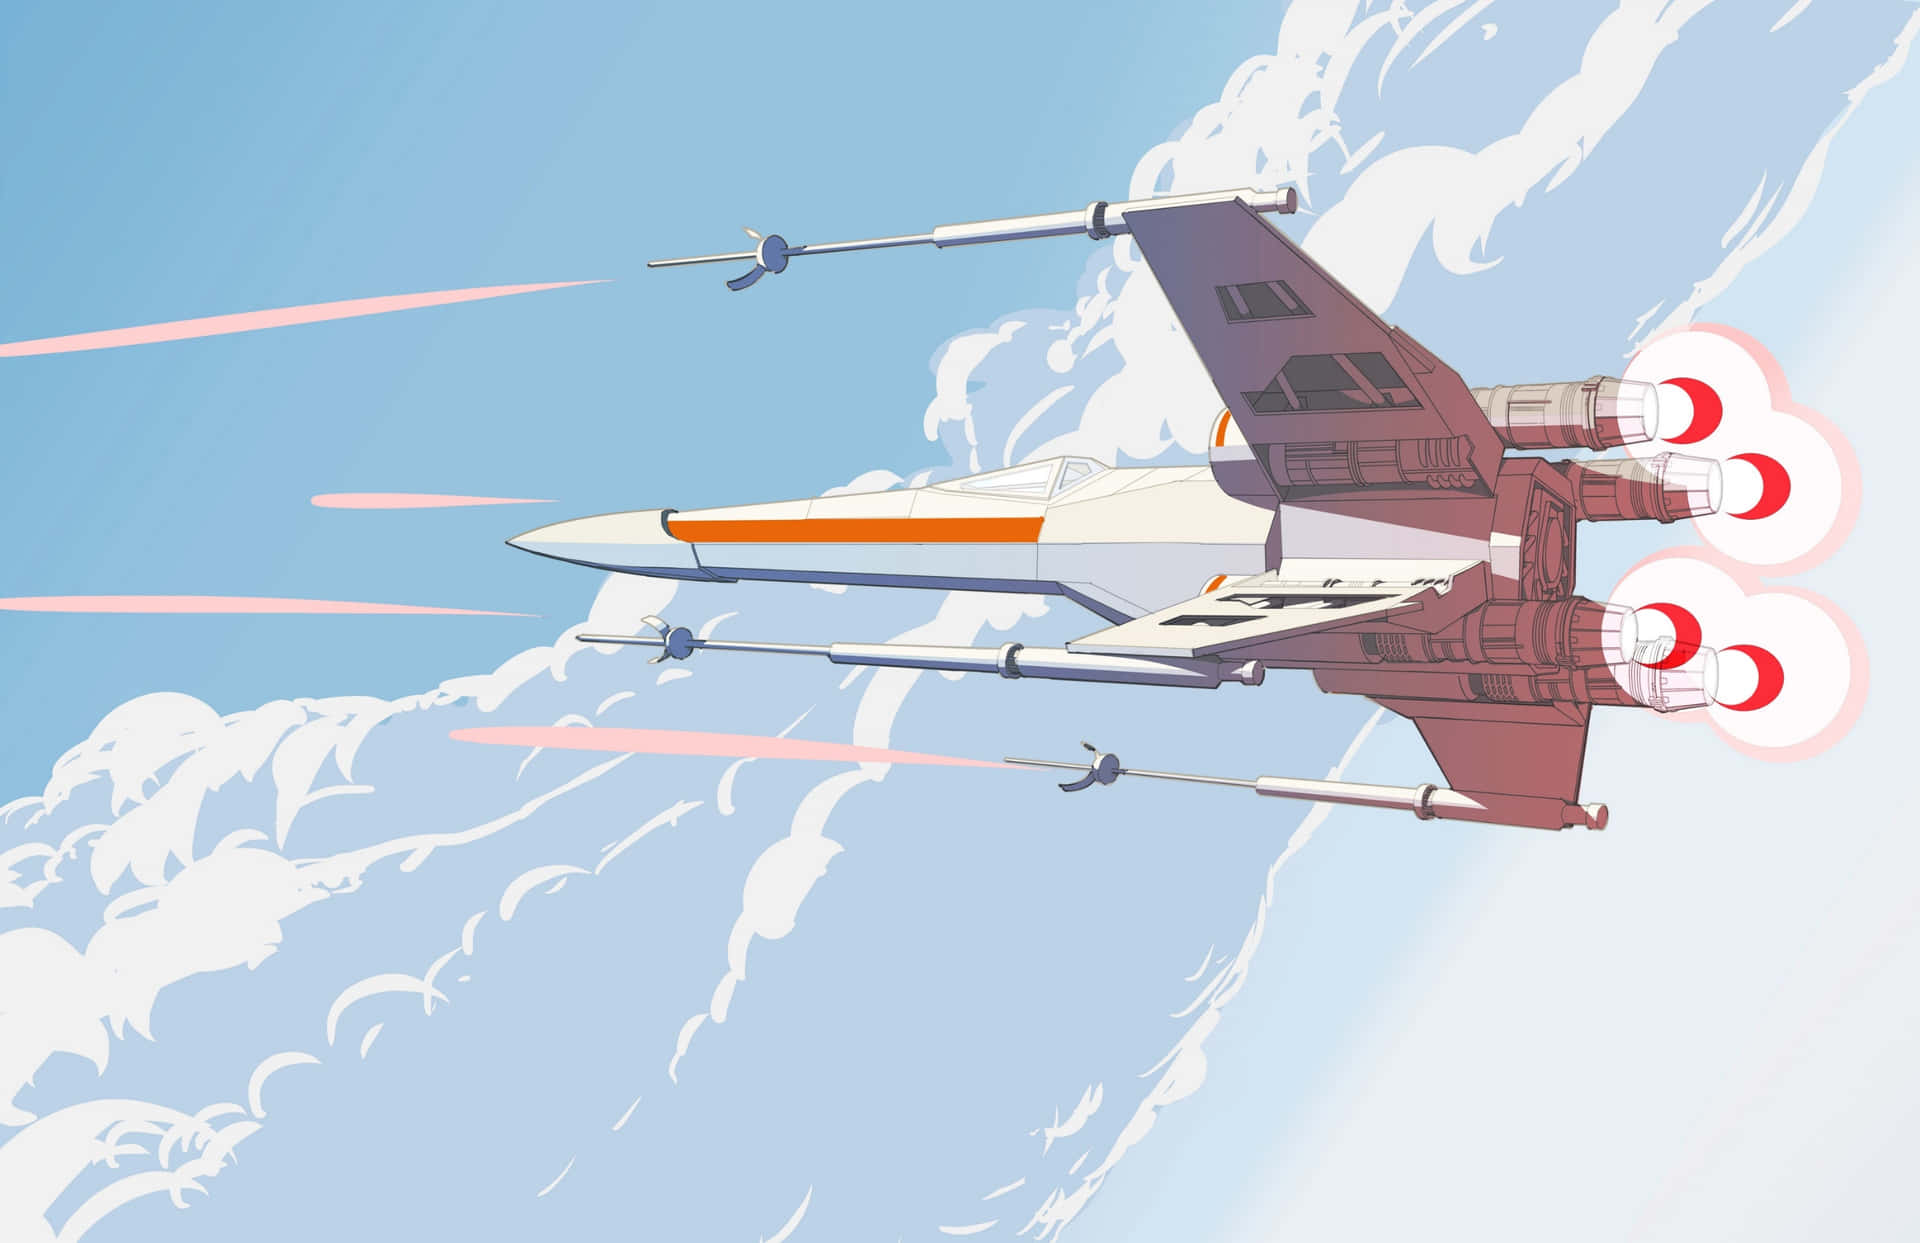 En X-wing kampfly tager til stjernerne i Star Wars-universet. Wallpaper